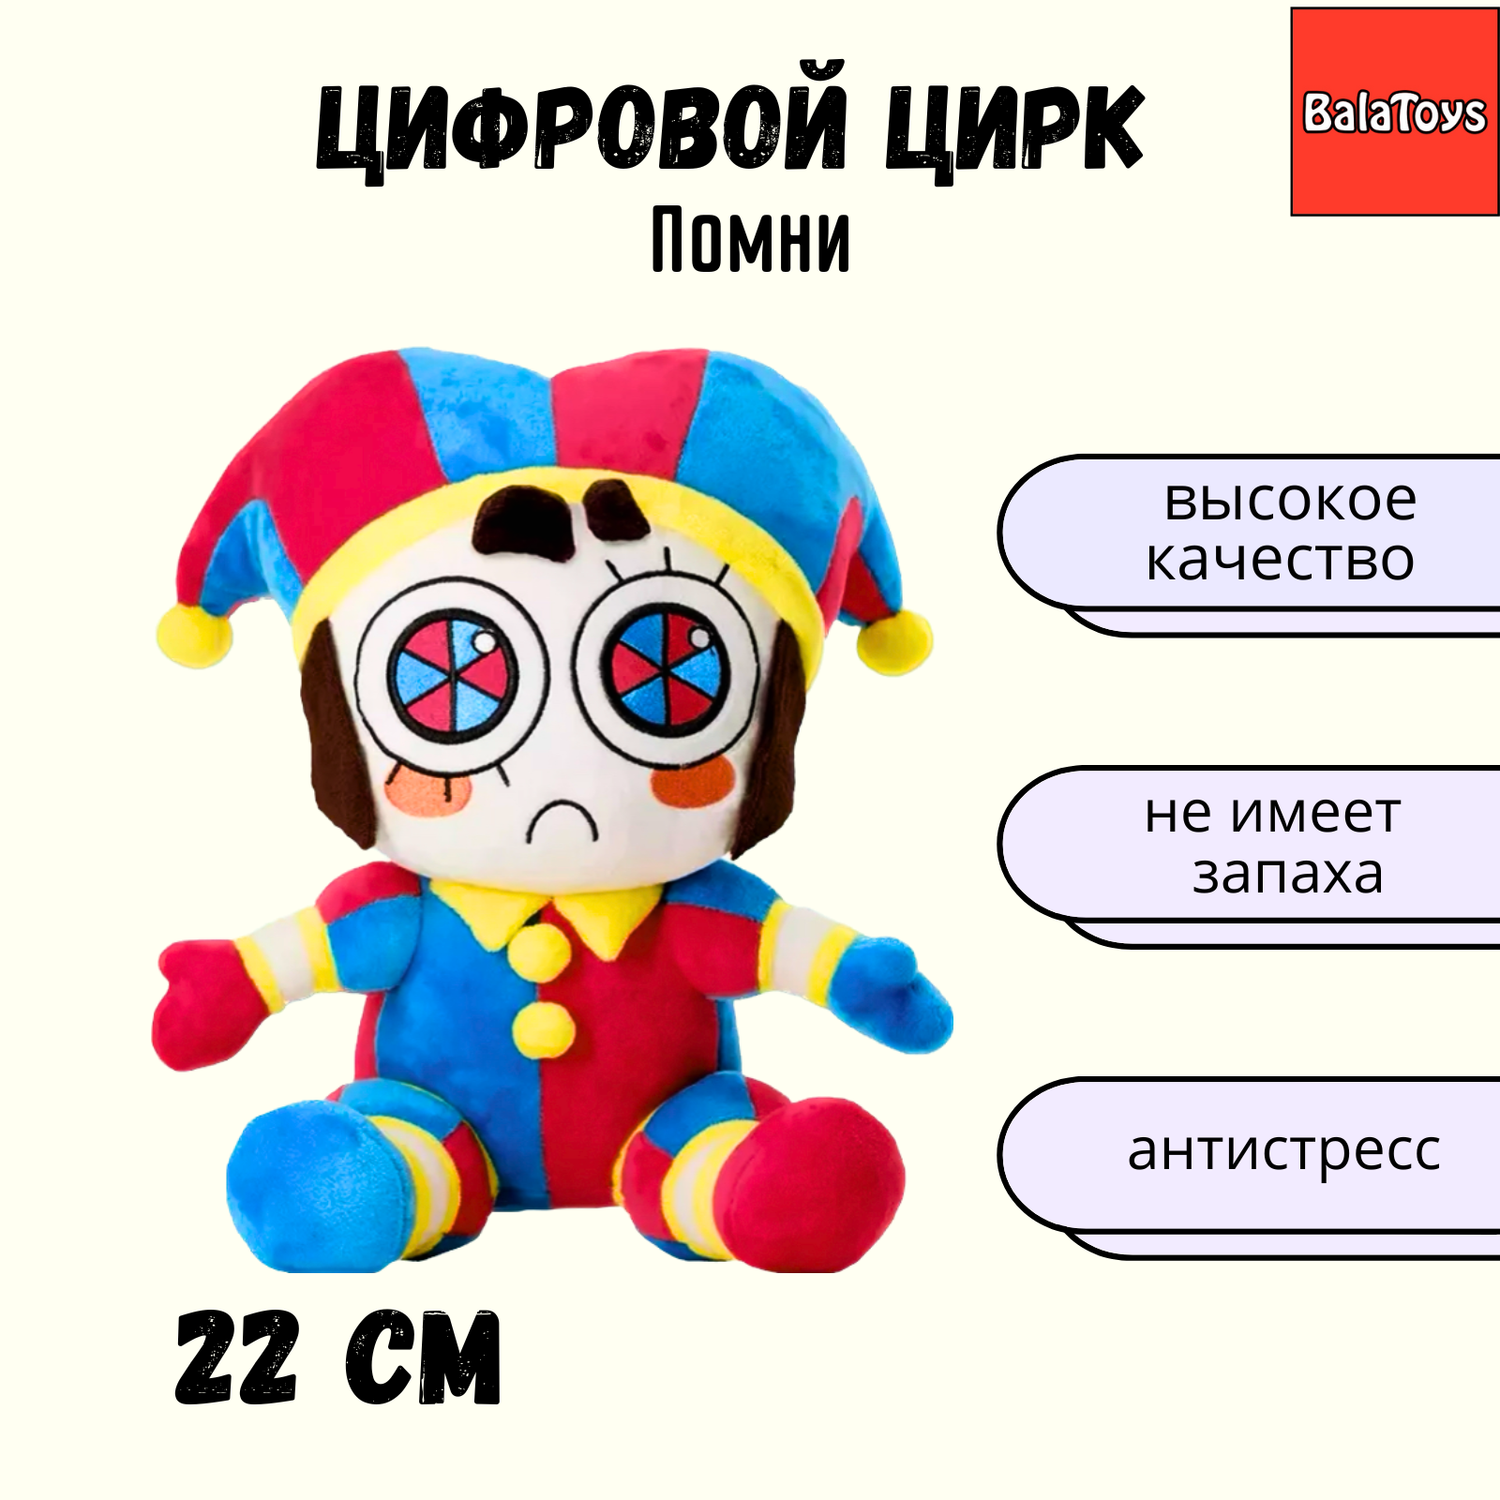 Мягкая игрушка Помни 22 см BalaToys Удивительный цифровой цирк - фото 1